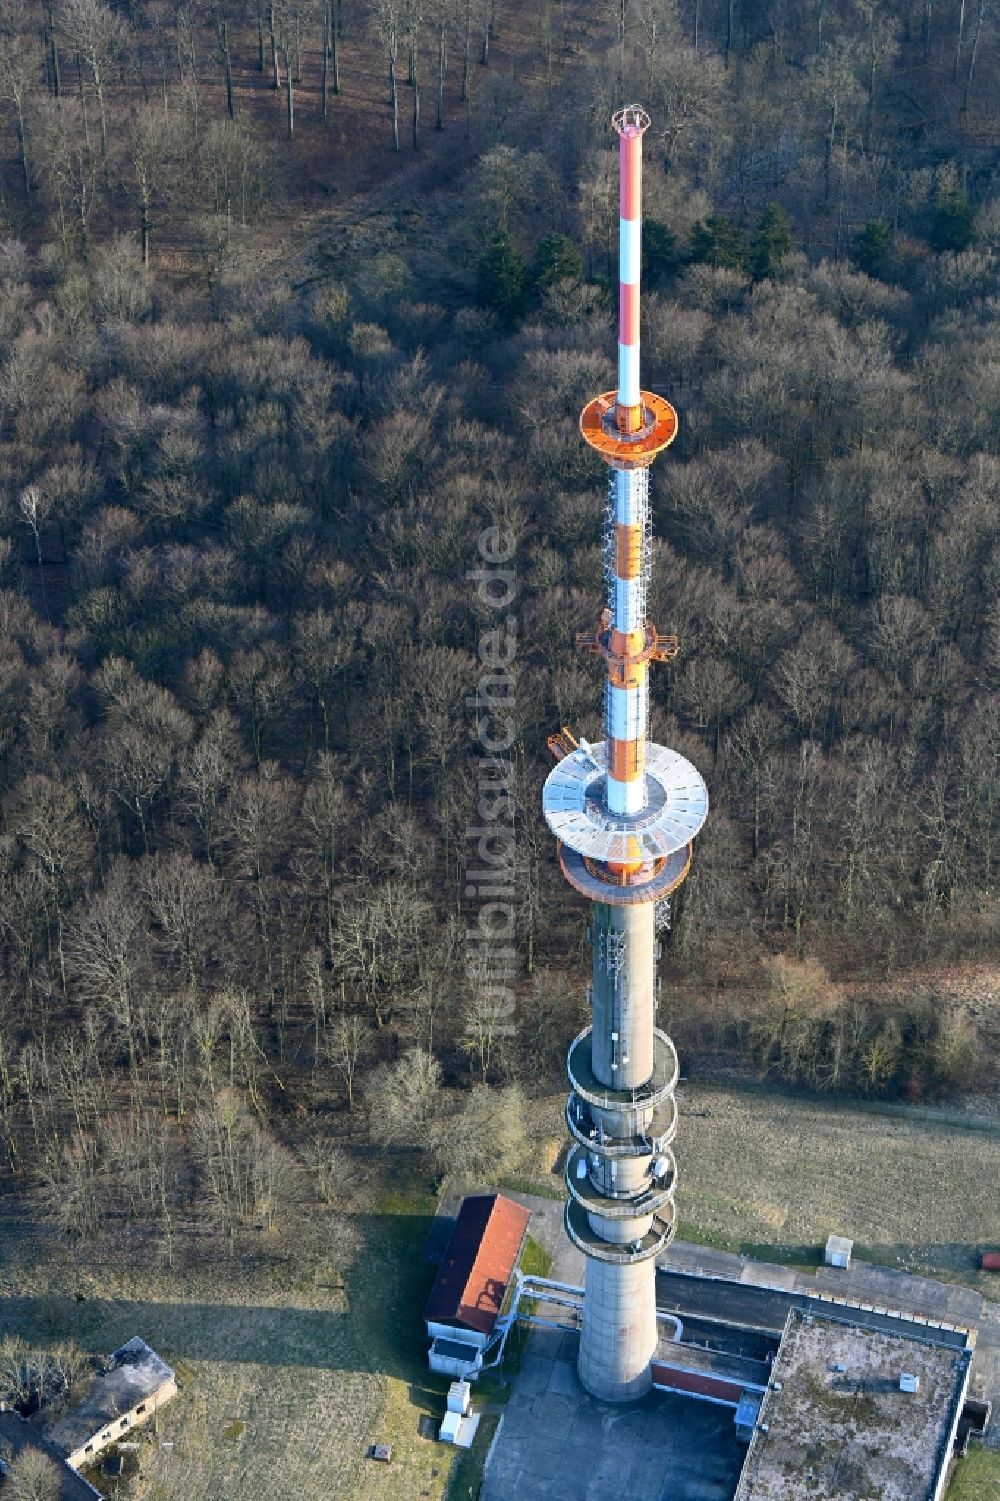 Luftbild Woldegk - Fernmeldeturm und Grundnetzsender Helpterberg in Woldegk im Bundesland Mecklenburg-Vorpommern, Deutschland